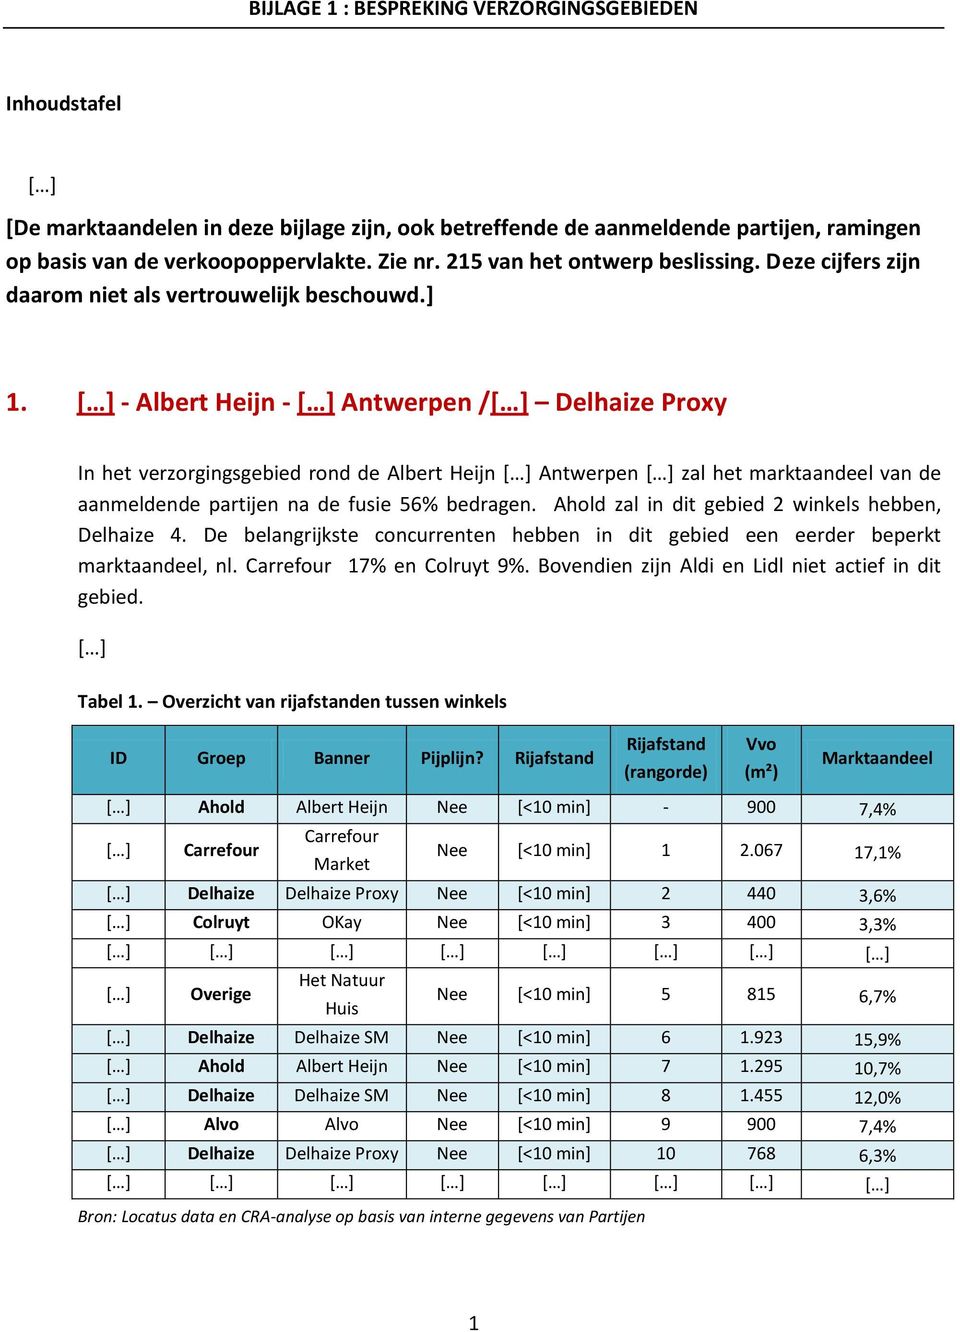 - Albert Heijn - Antwerpen / Proxy In het verzorgingsgebied rond de Albert Heijn Antwerpen zal het marktaandeel van de aanmeldende partijen na de fusie 56% bedragen.